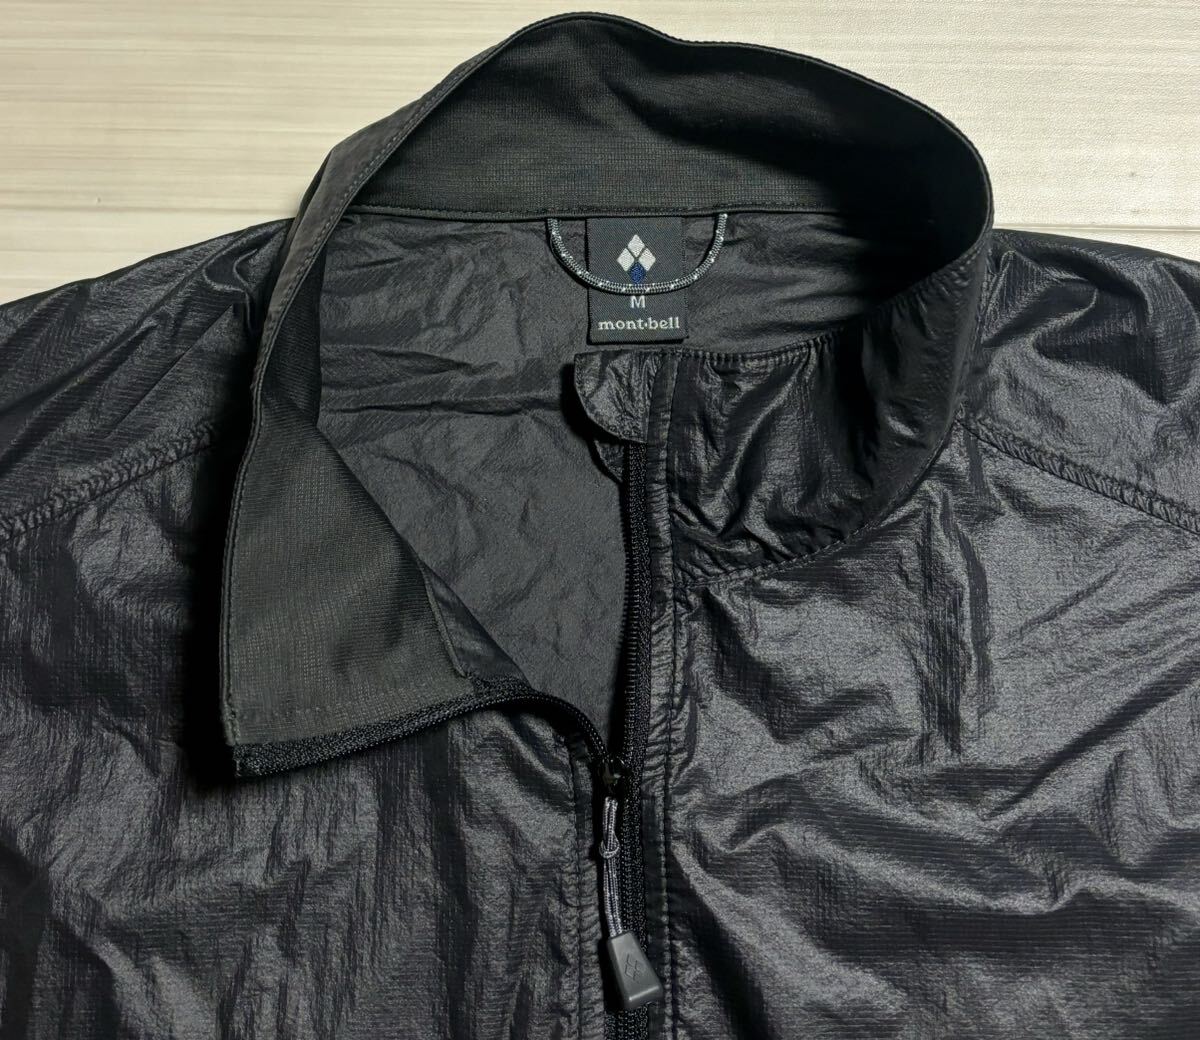 ◎ montbell モンベル #1103277 大阪店舗購入 軽量ナイロン 黒 ブラックカラー メンズ ジャケット ジャンパー ブルゾン Mサイズ アウトドアの画像3